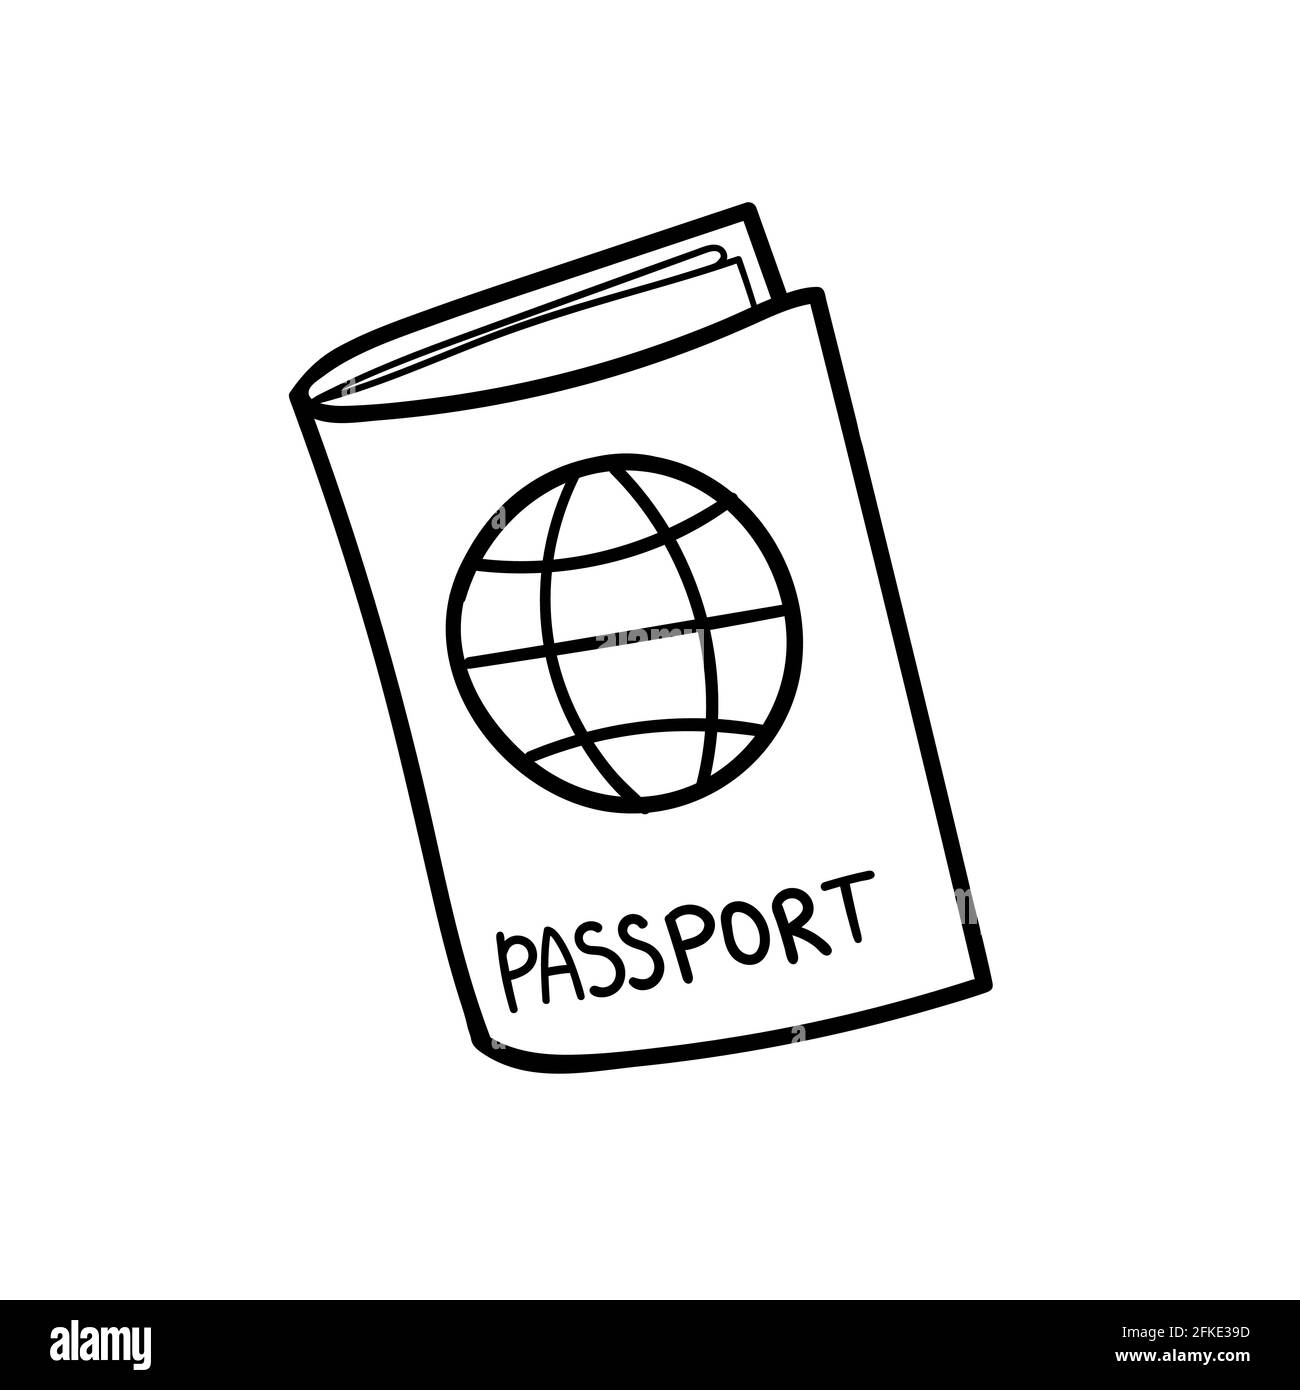 Passport, a hand drawn vector of a passport Stock Vector